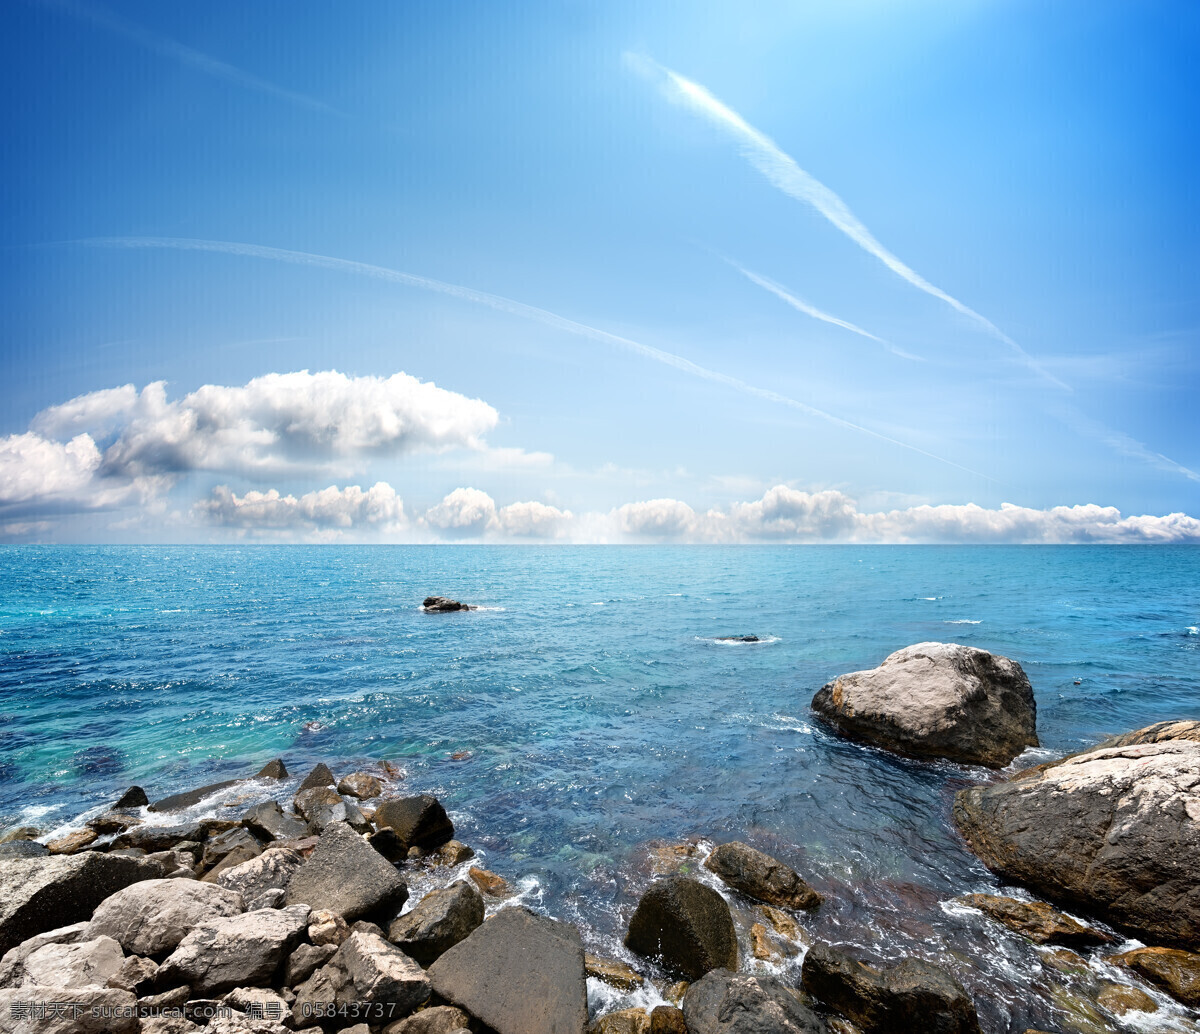 海滩景色 海岸风景 大海风景 海洋风景 大海 海洋 沙滩 石头 夏日风景 夏日 冰爽 蓝色 蔚蓝 青色 天蓝色